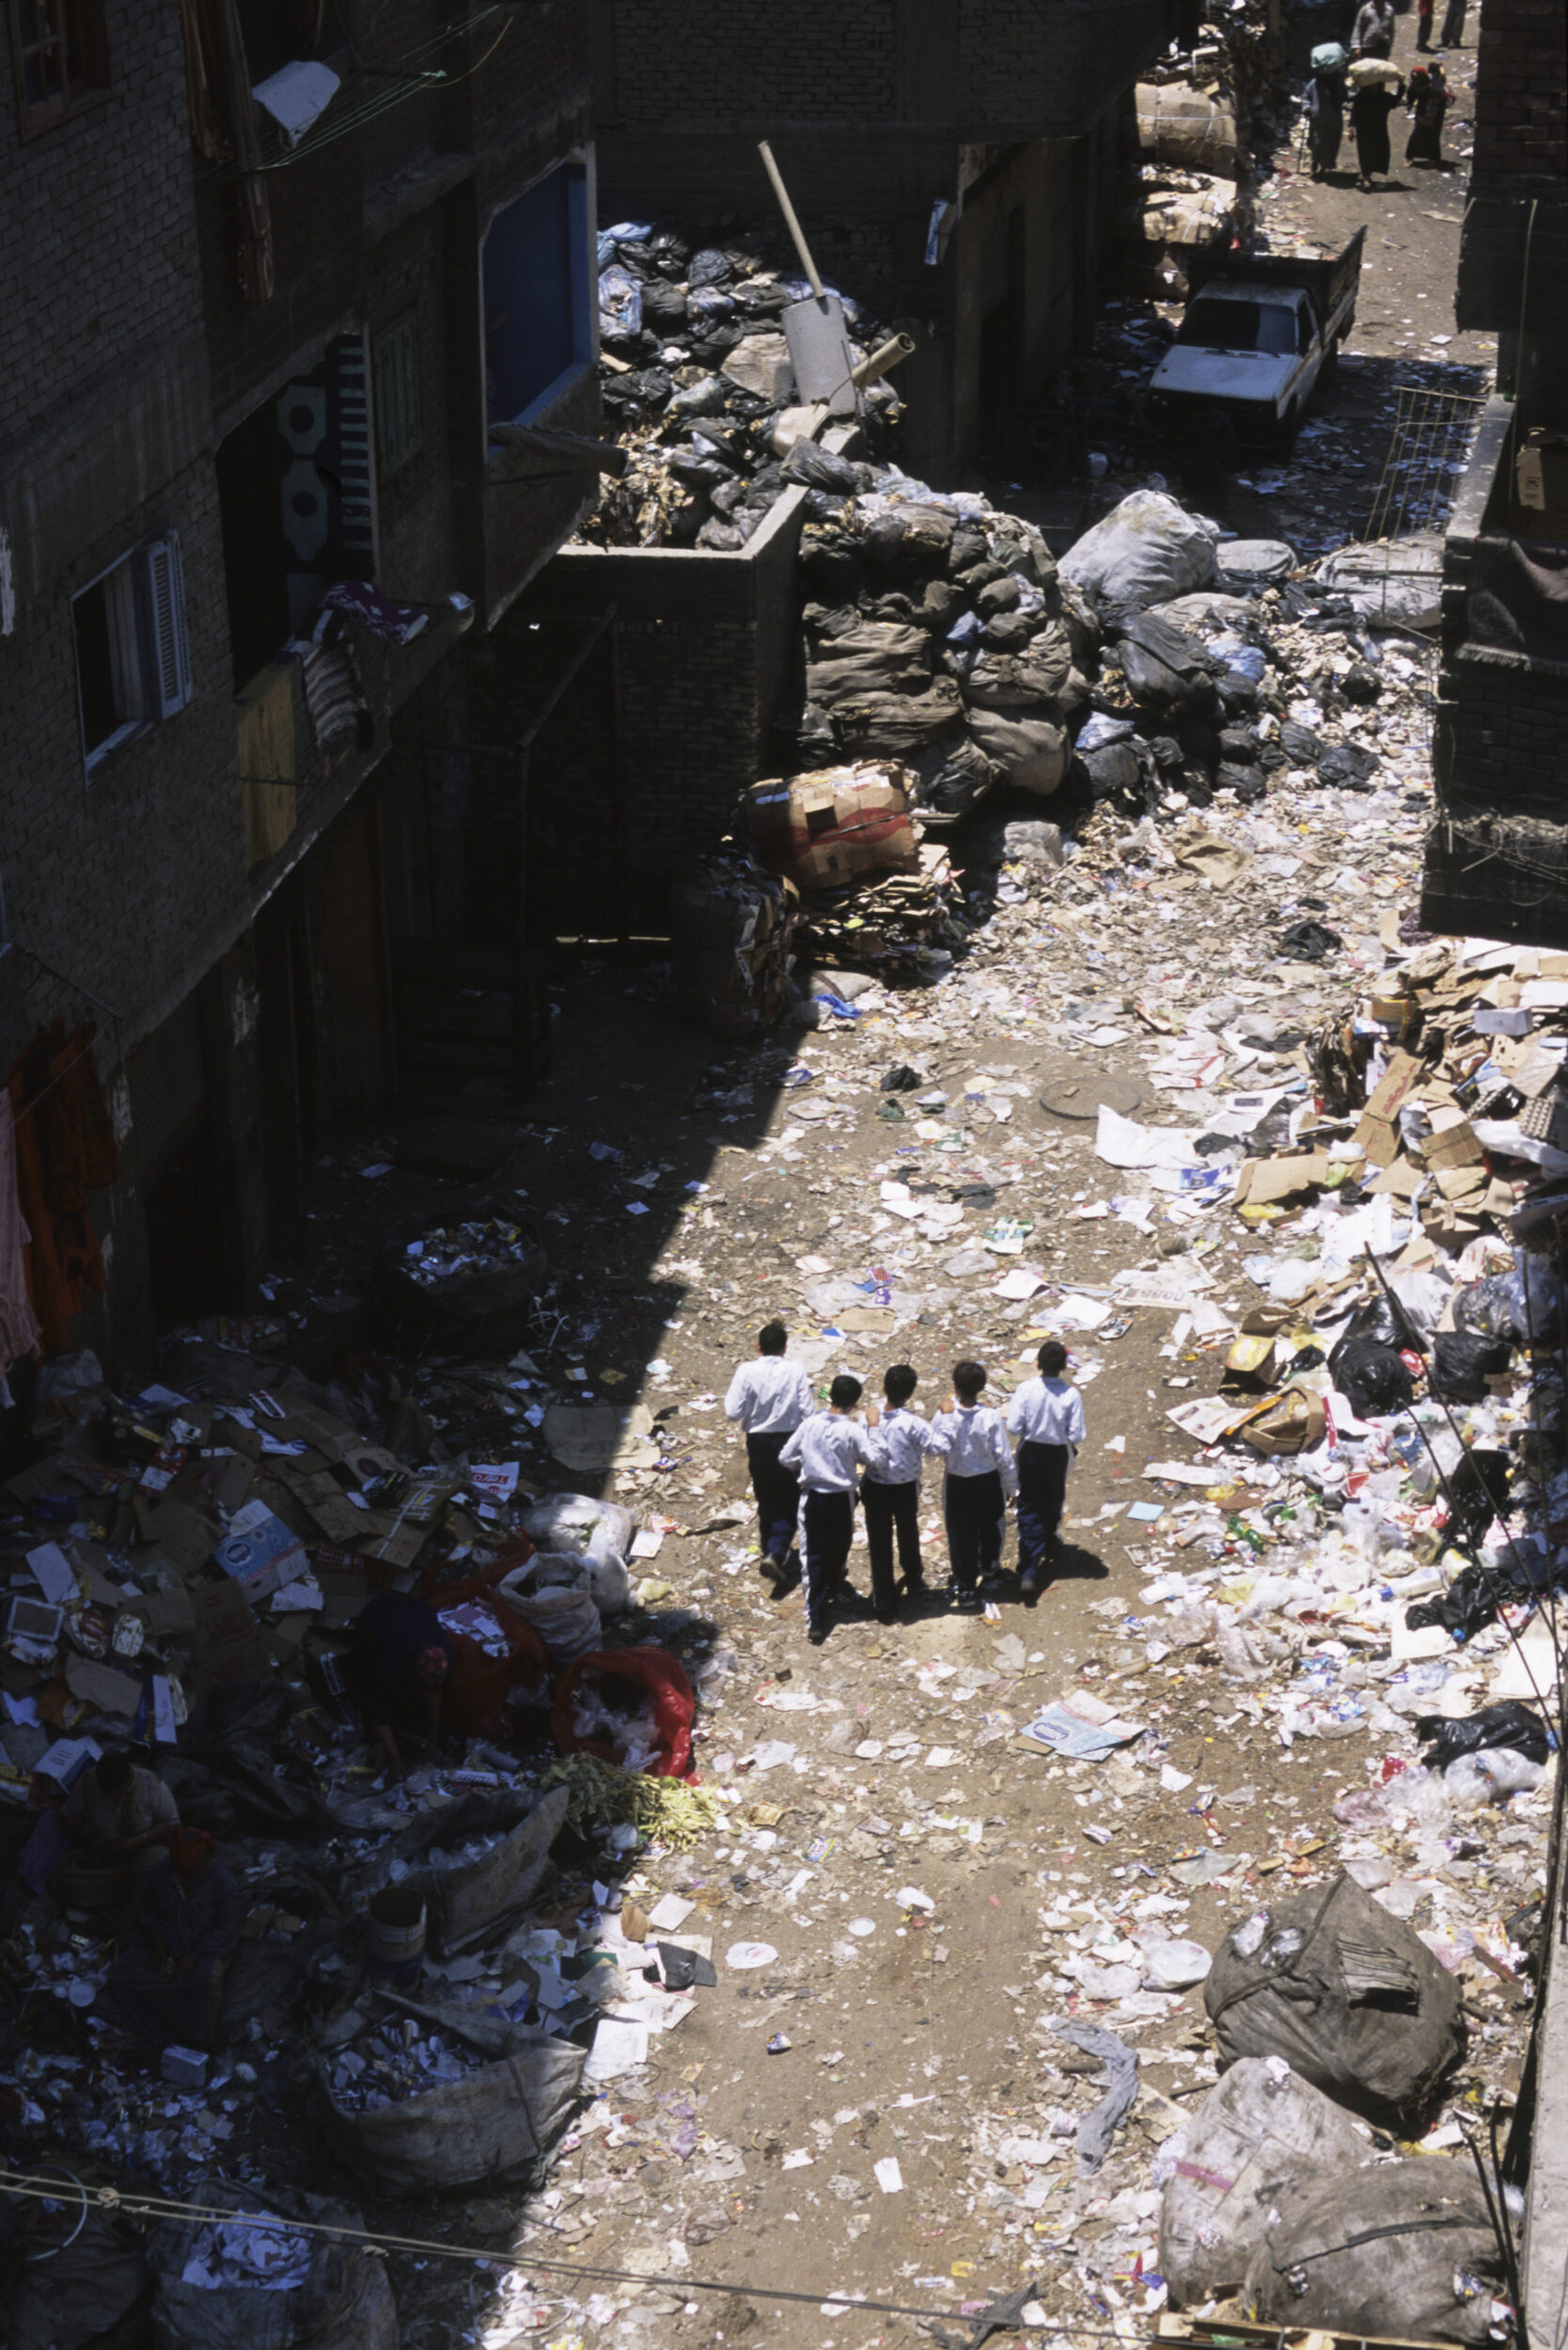 Écoliers sur le chemin de l'école au milieu des ordures dans une rue du quartier du Mokattam au Caire.